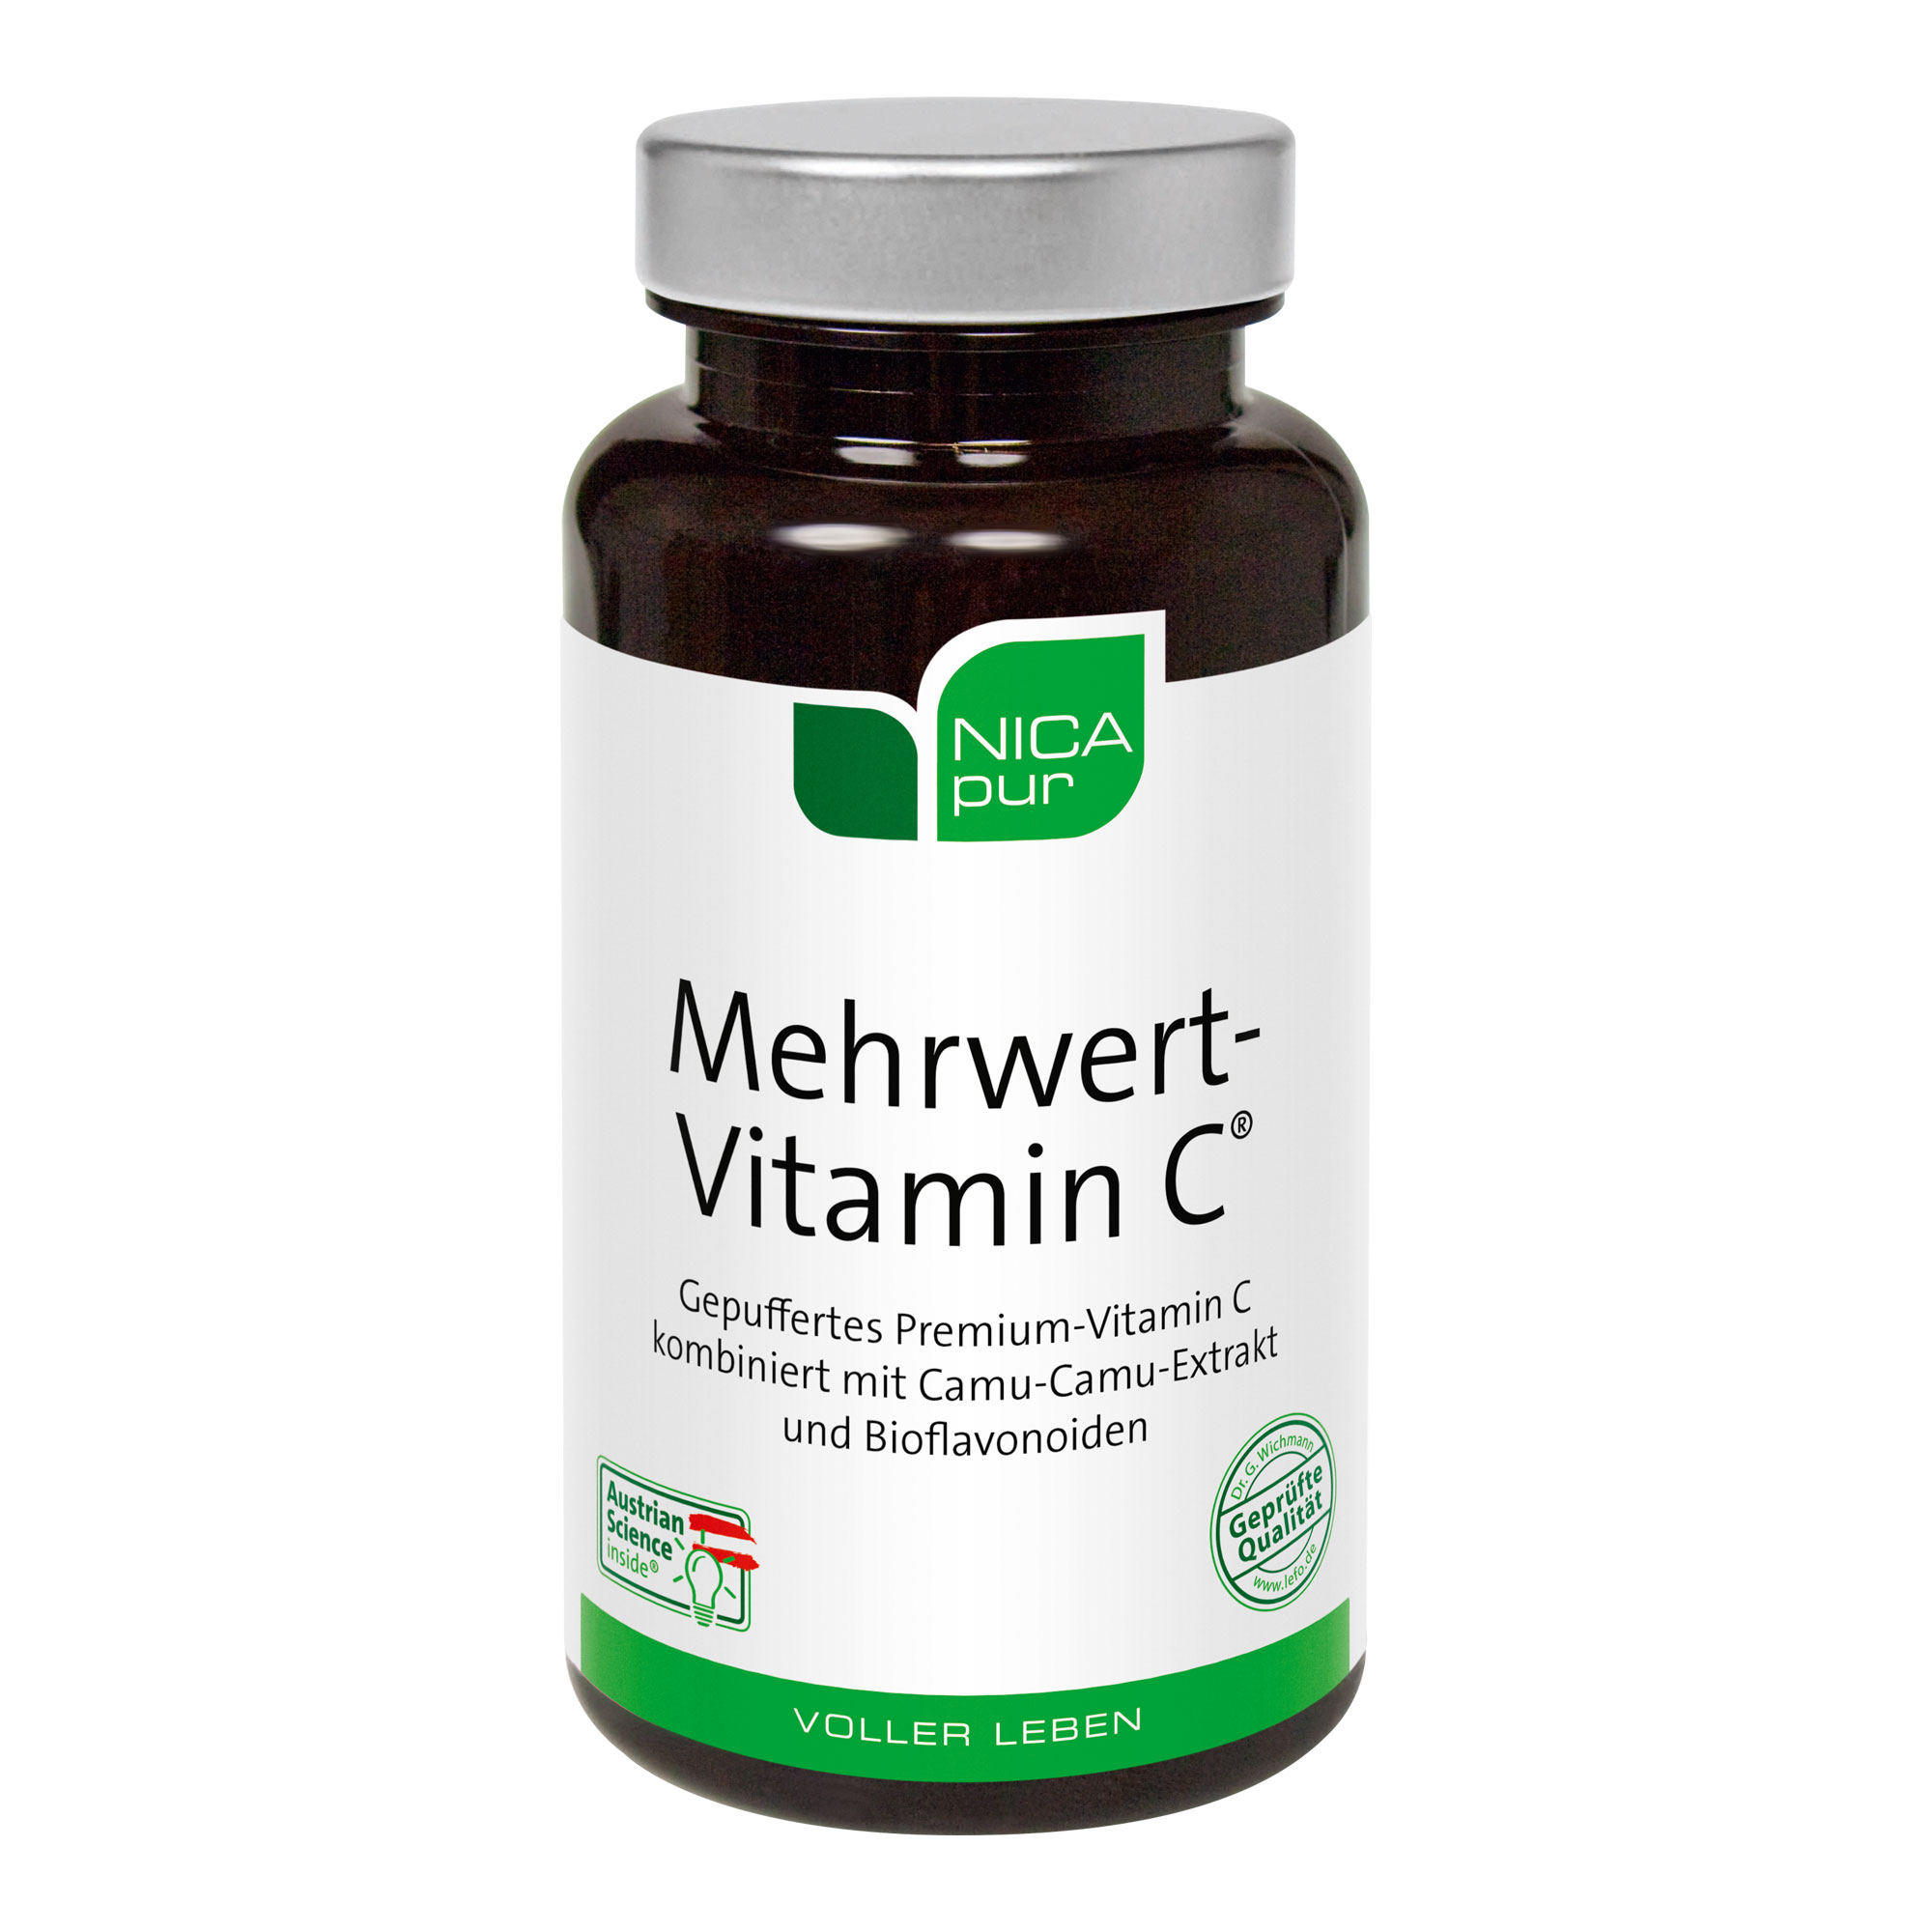 Nahrungsergänzungsmittel mit einer gut verträglichen, nicht sauren Vitamin-C-Verbindung, Camu-Camu-Extrakt kombiniert mit Bioflavonoiden.